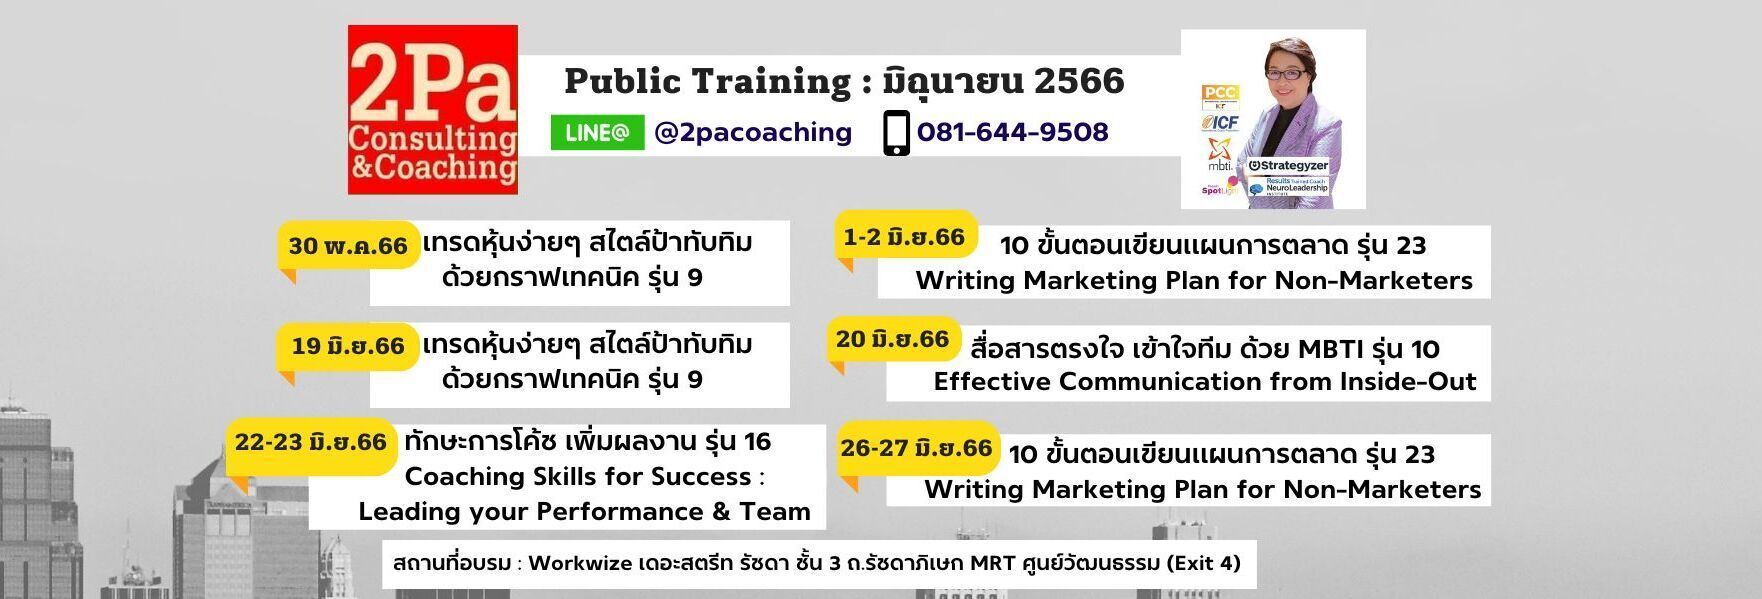 Public Training ตารางอบรม มิถุนายน 2566